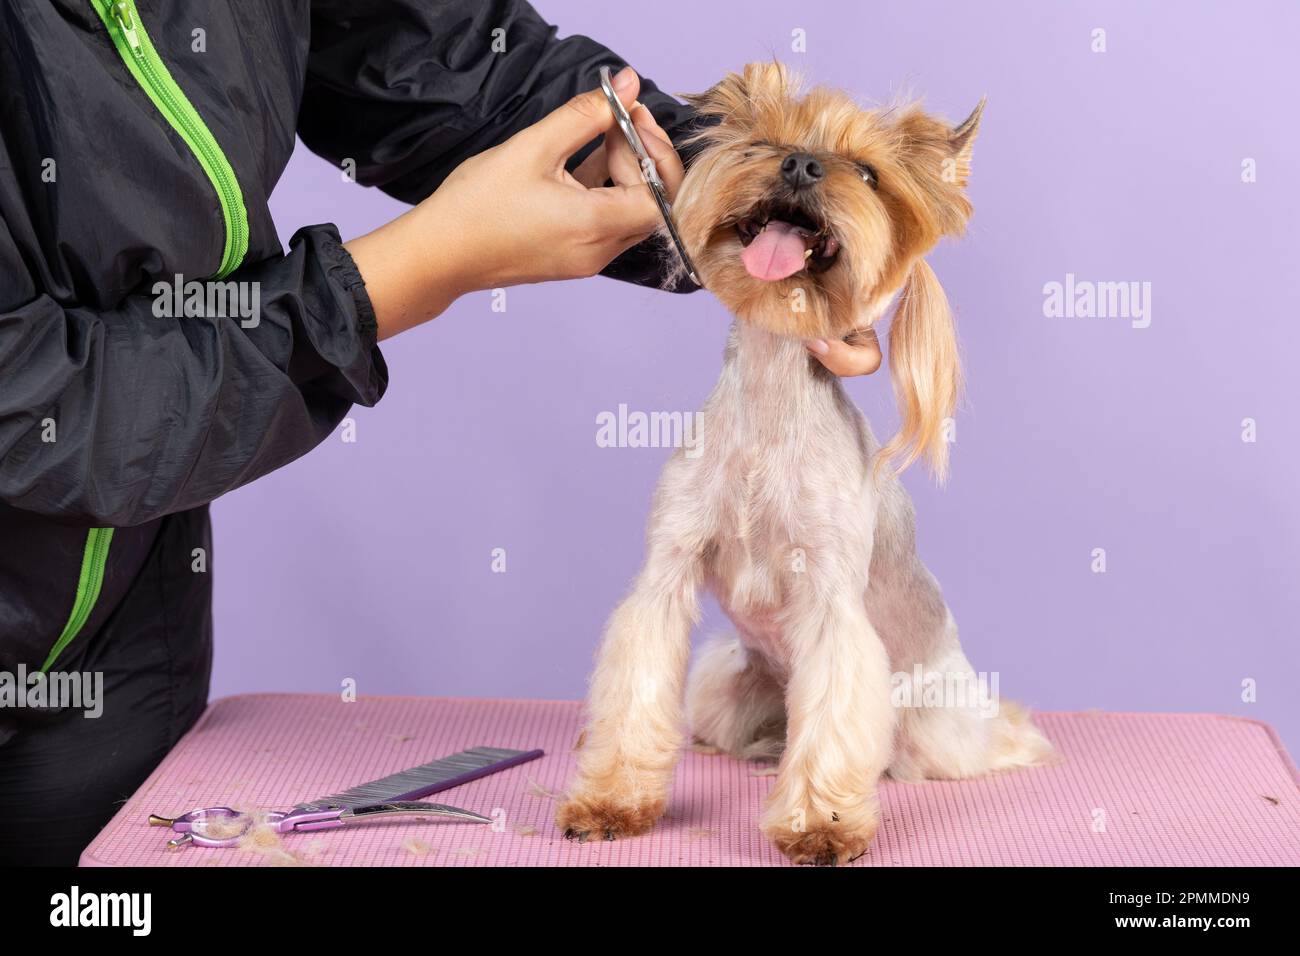 La tondeuse coupe le museau d'un Yorkshire Terrier. Le chien reste sur fond rose. concept de soins aux animaux Banque D'Images